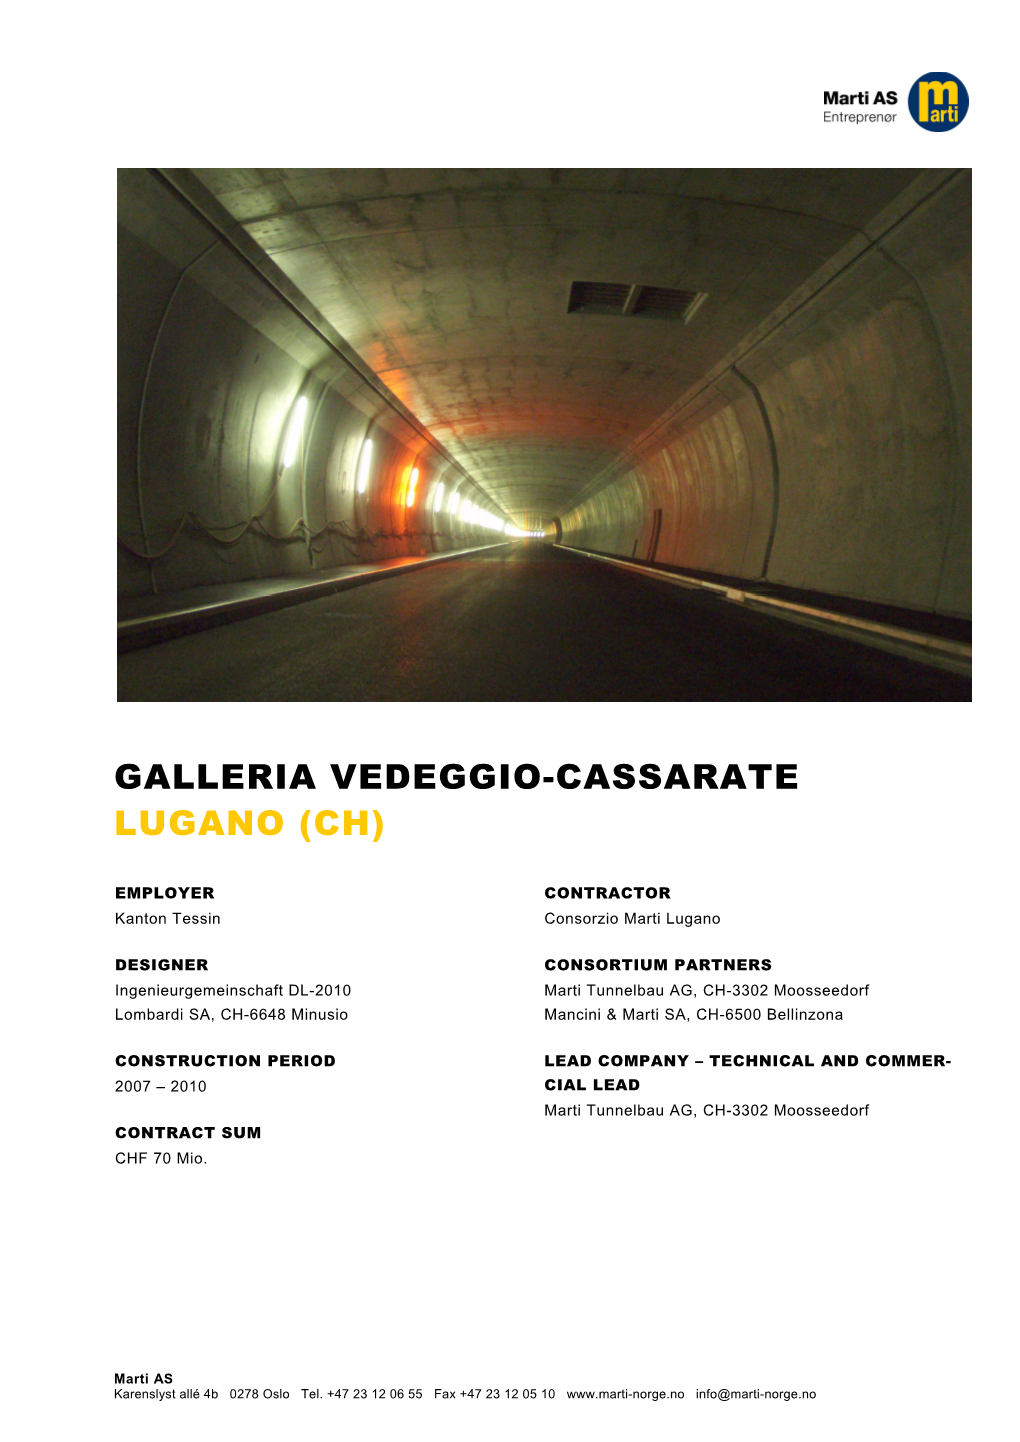 Galleria Vedeggio-Cassarate Lugano (Ch)